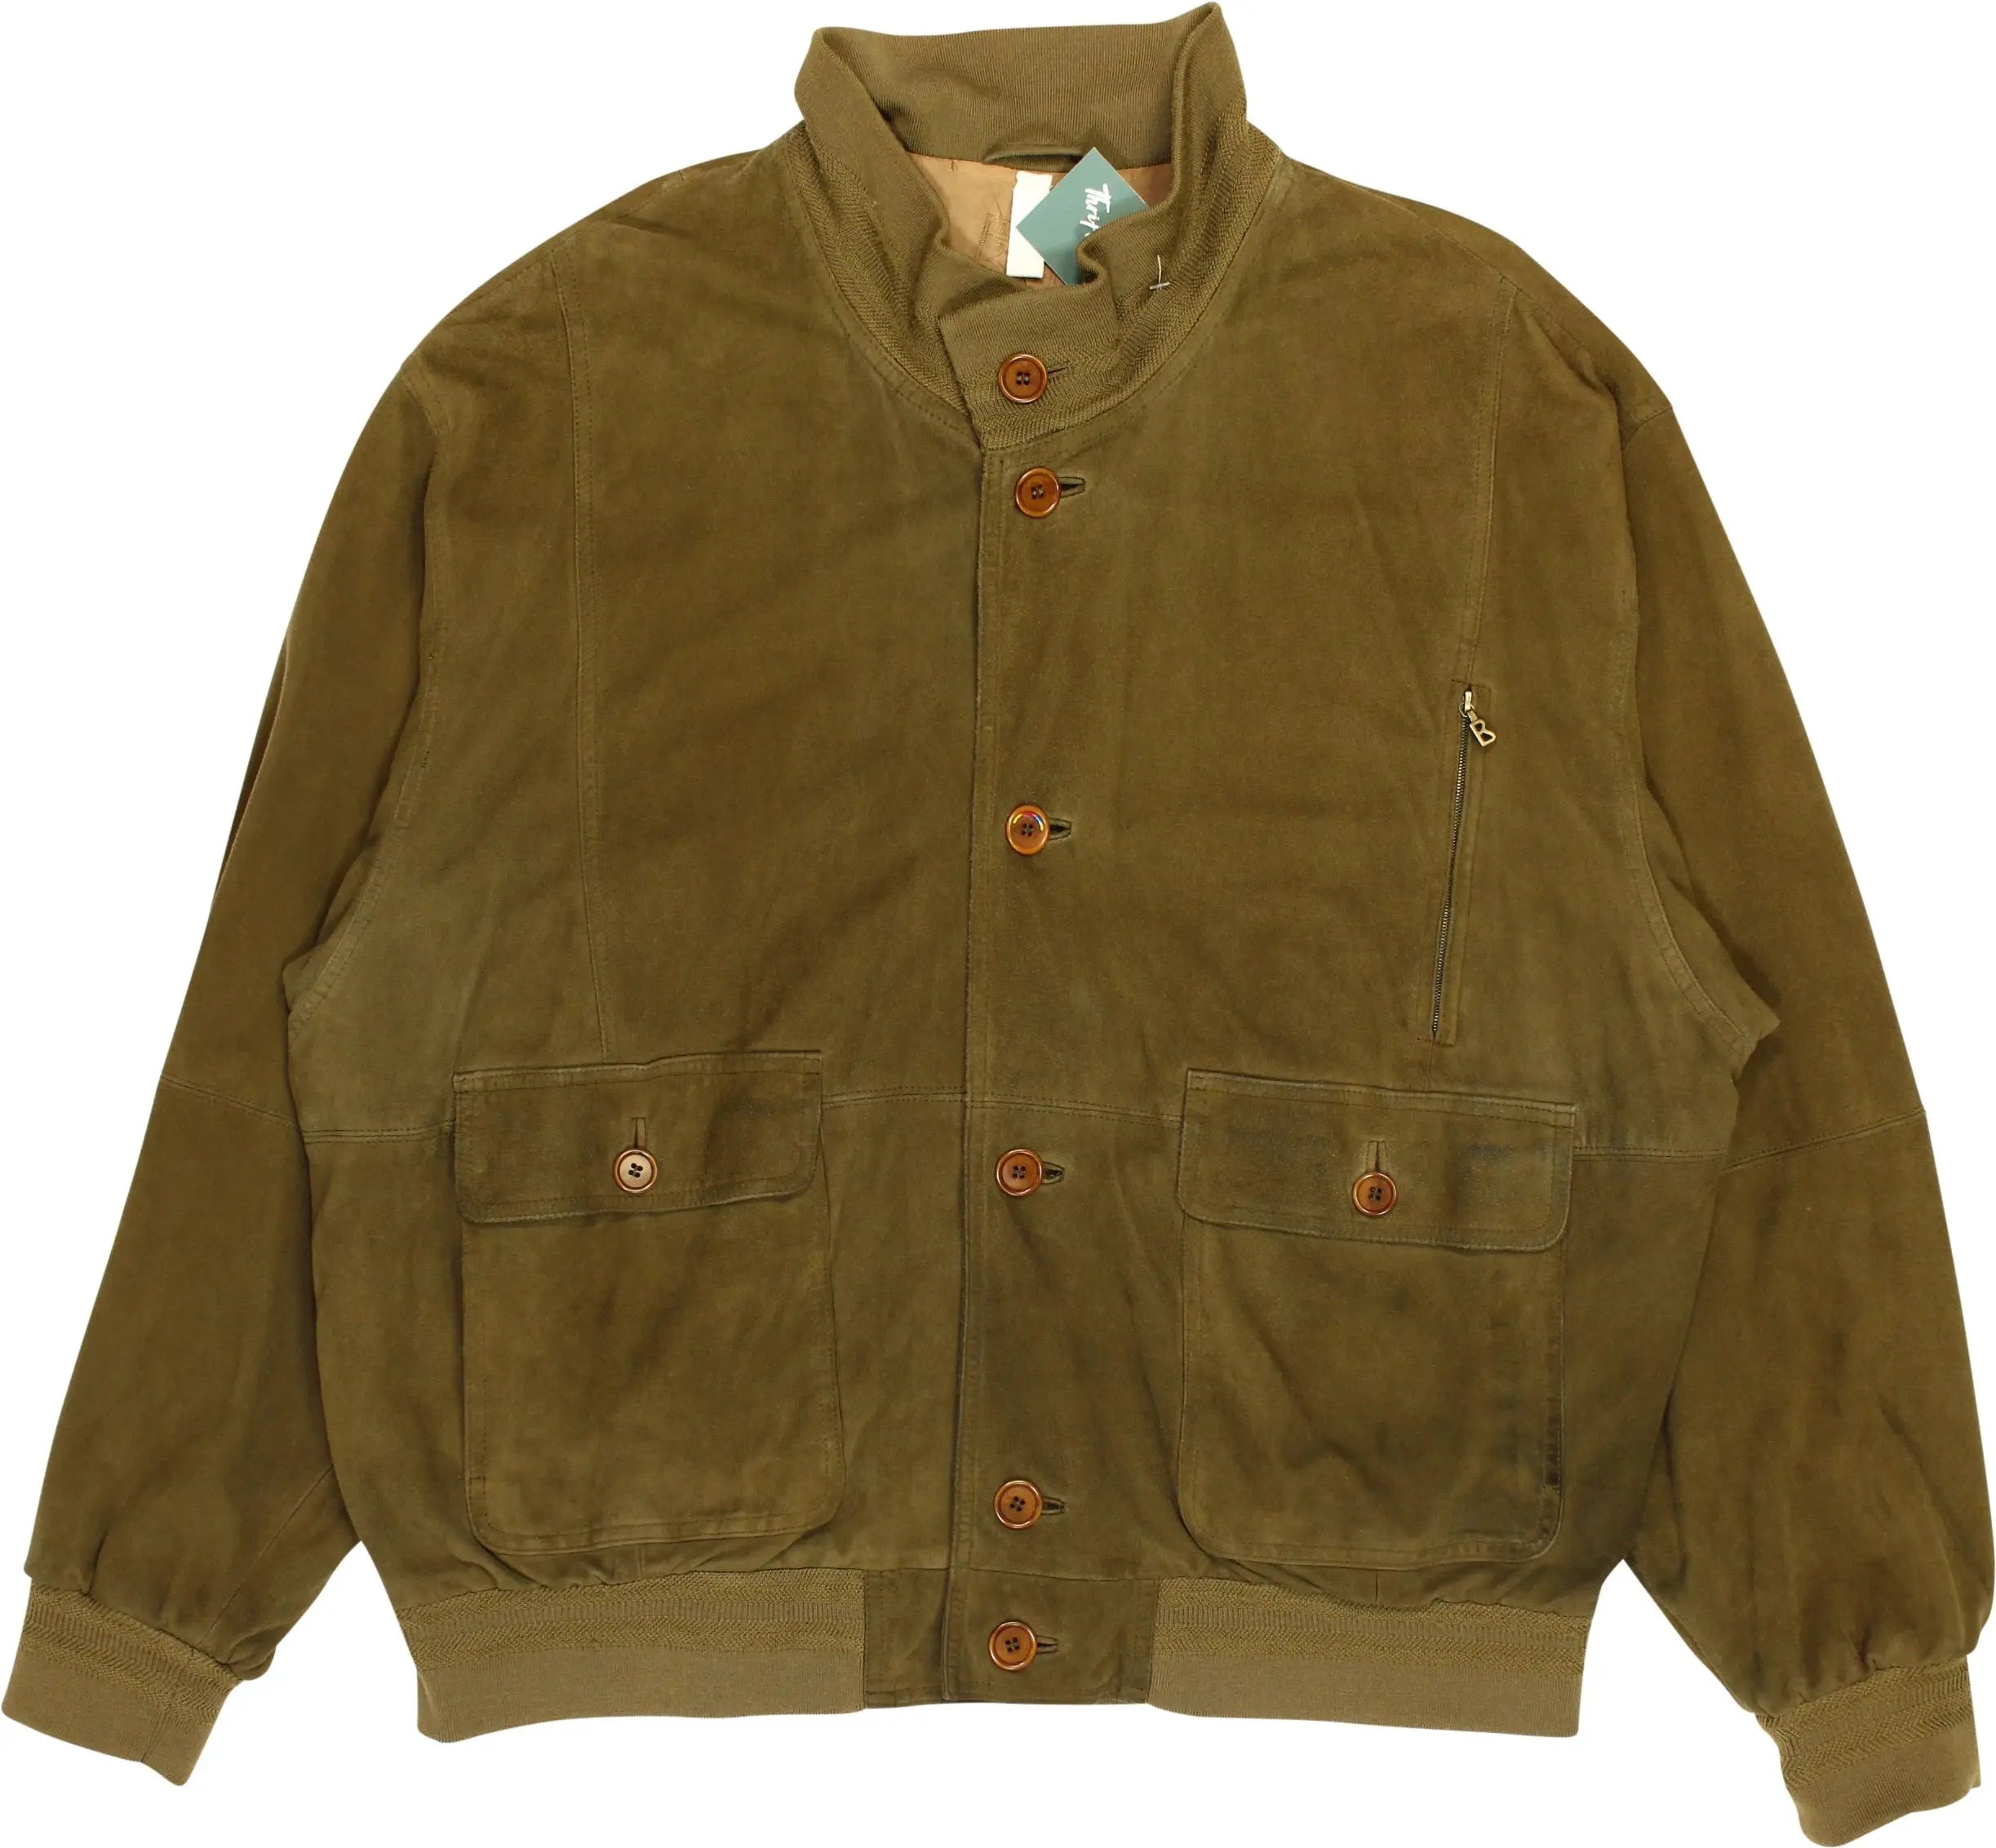 Bogner - Green Jacket by Bogner- ThriftTale.com - Vintage and second handclothing